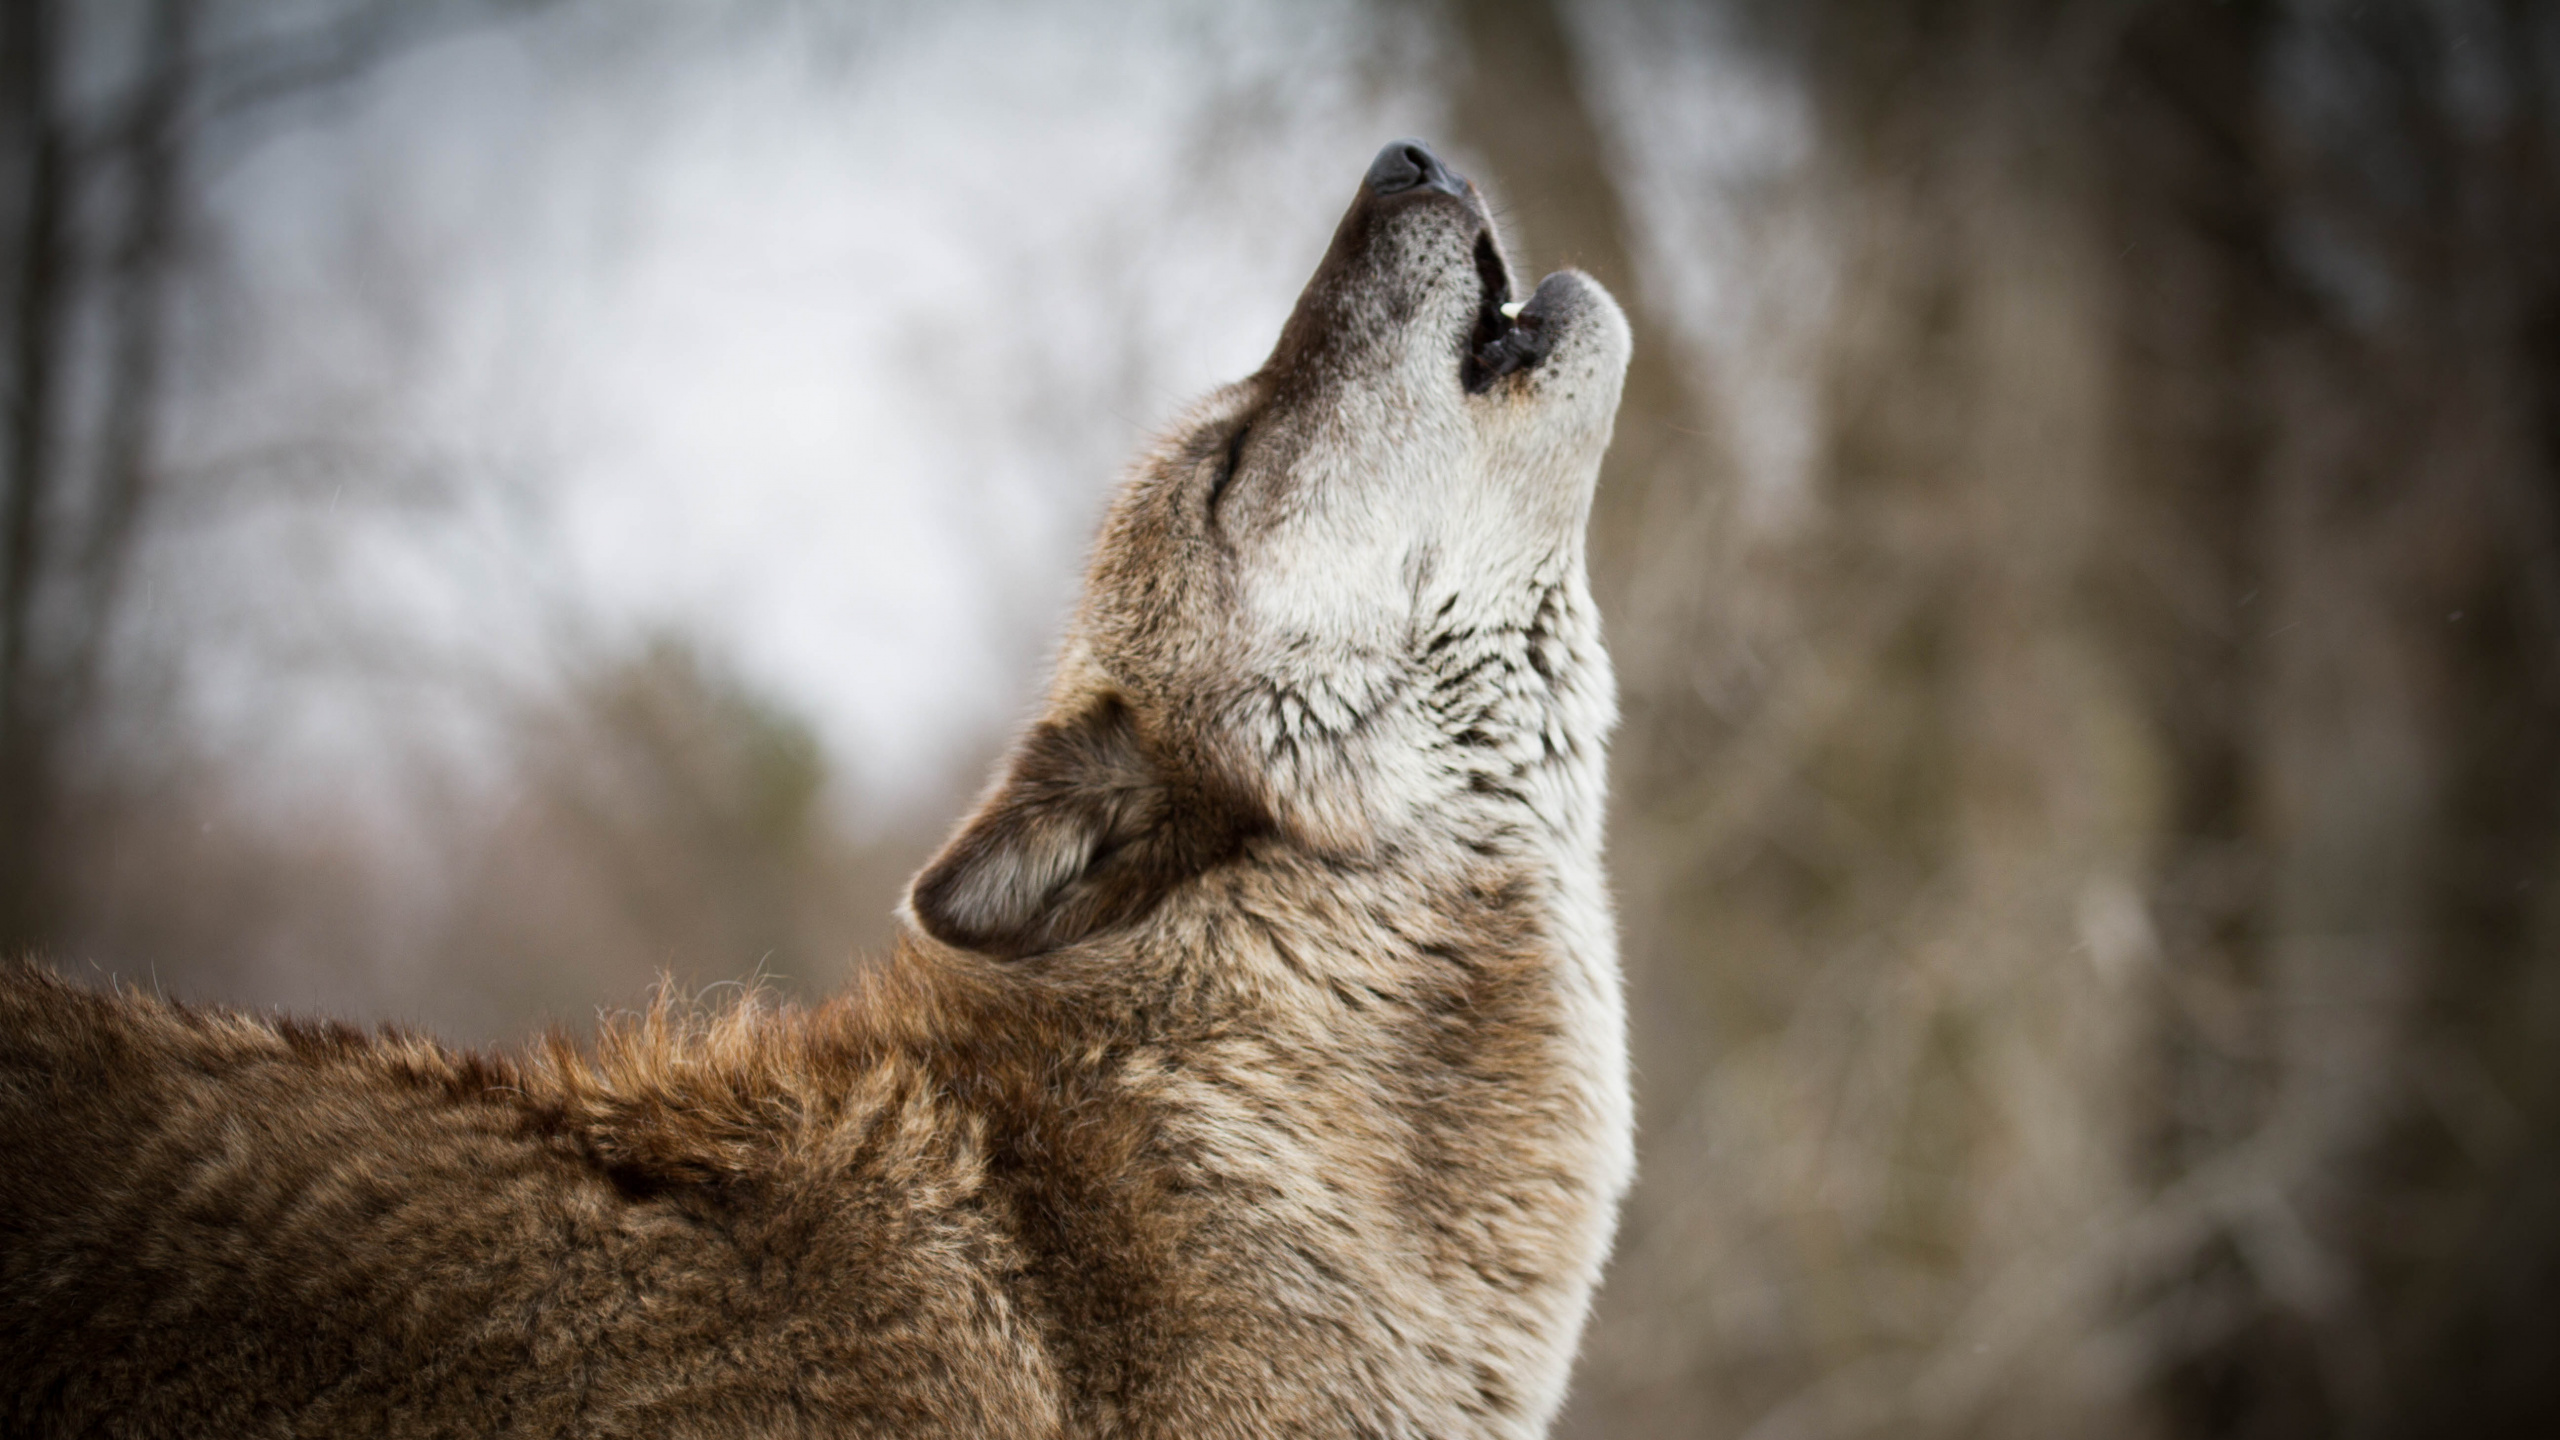 红色狼, 野生动物, 狼, 捷克斯洛伐克那只狼狗, 狗喜欢哺乳动物 壁纸 2560x1440 允许